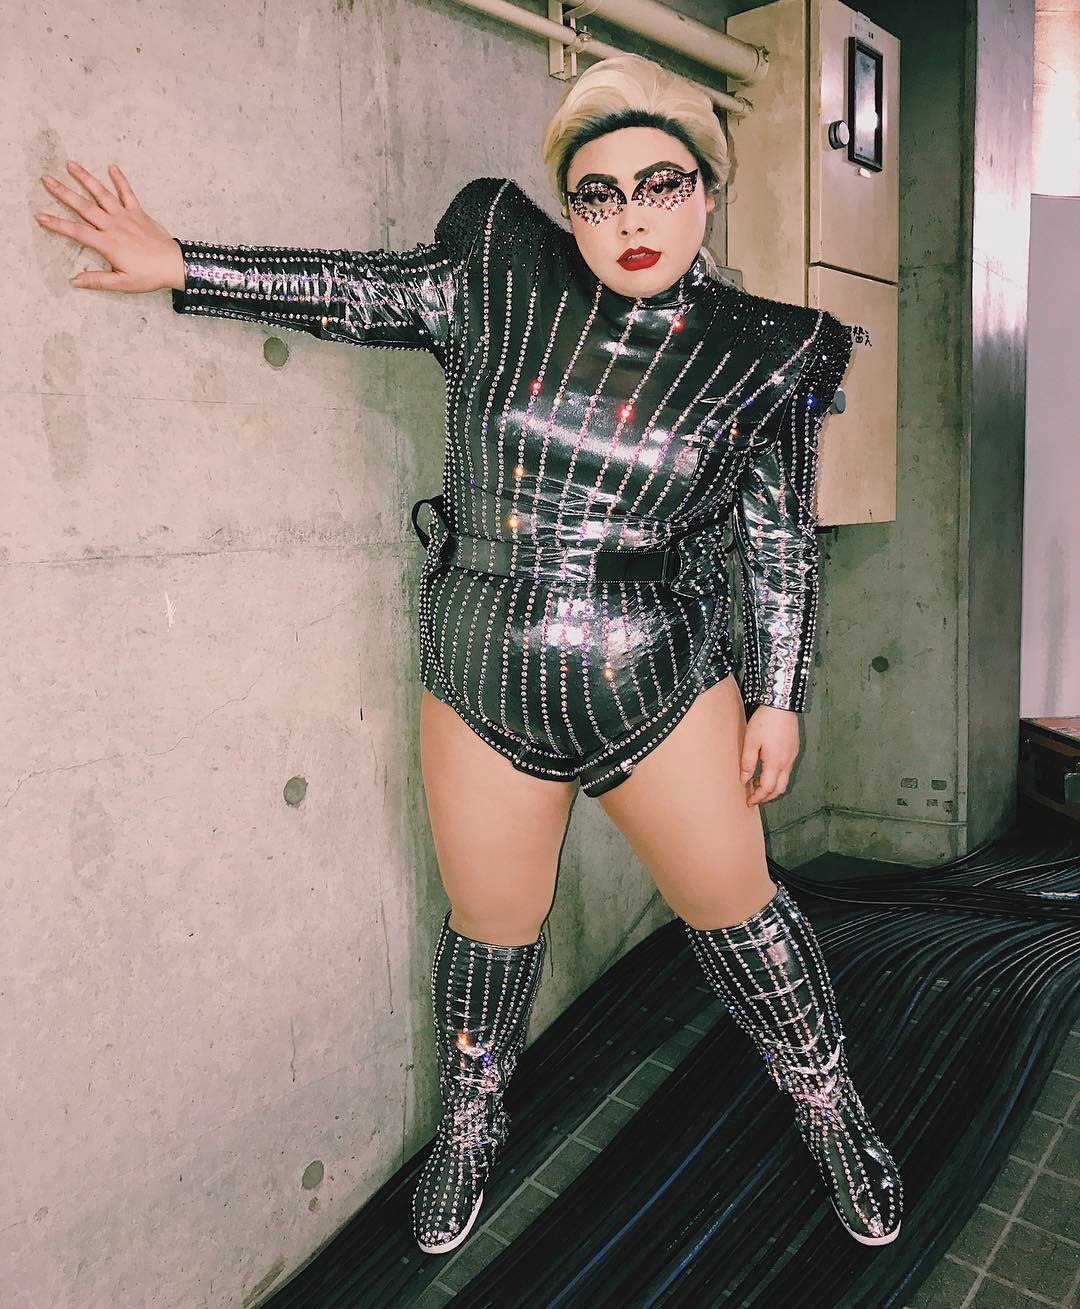 渡辺直美 Lady Gaga Super Bowl Half Time Show Ladygaga Tgc Pacstore 今回も沢山のプロの方々に助けて頂 Wacoca Japan People Life Style